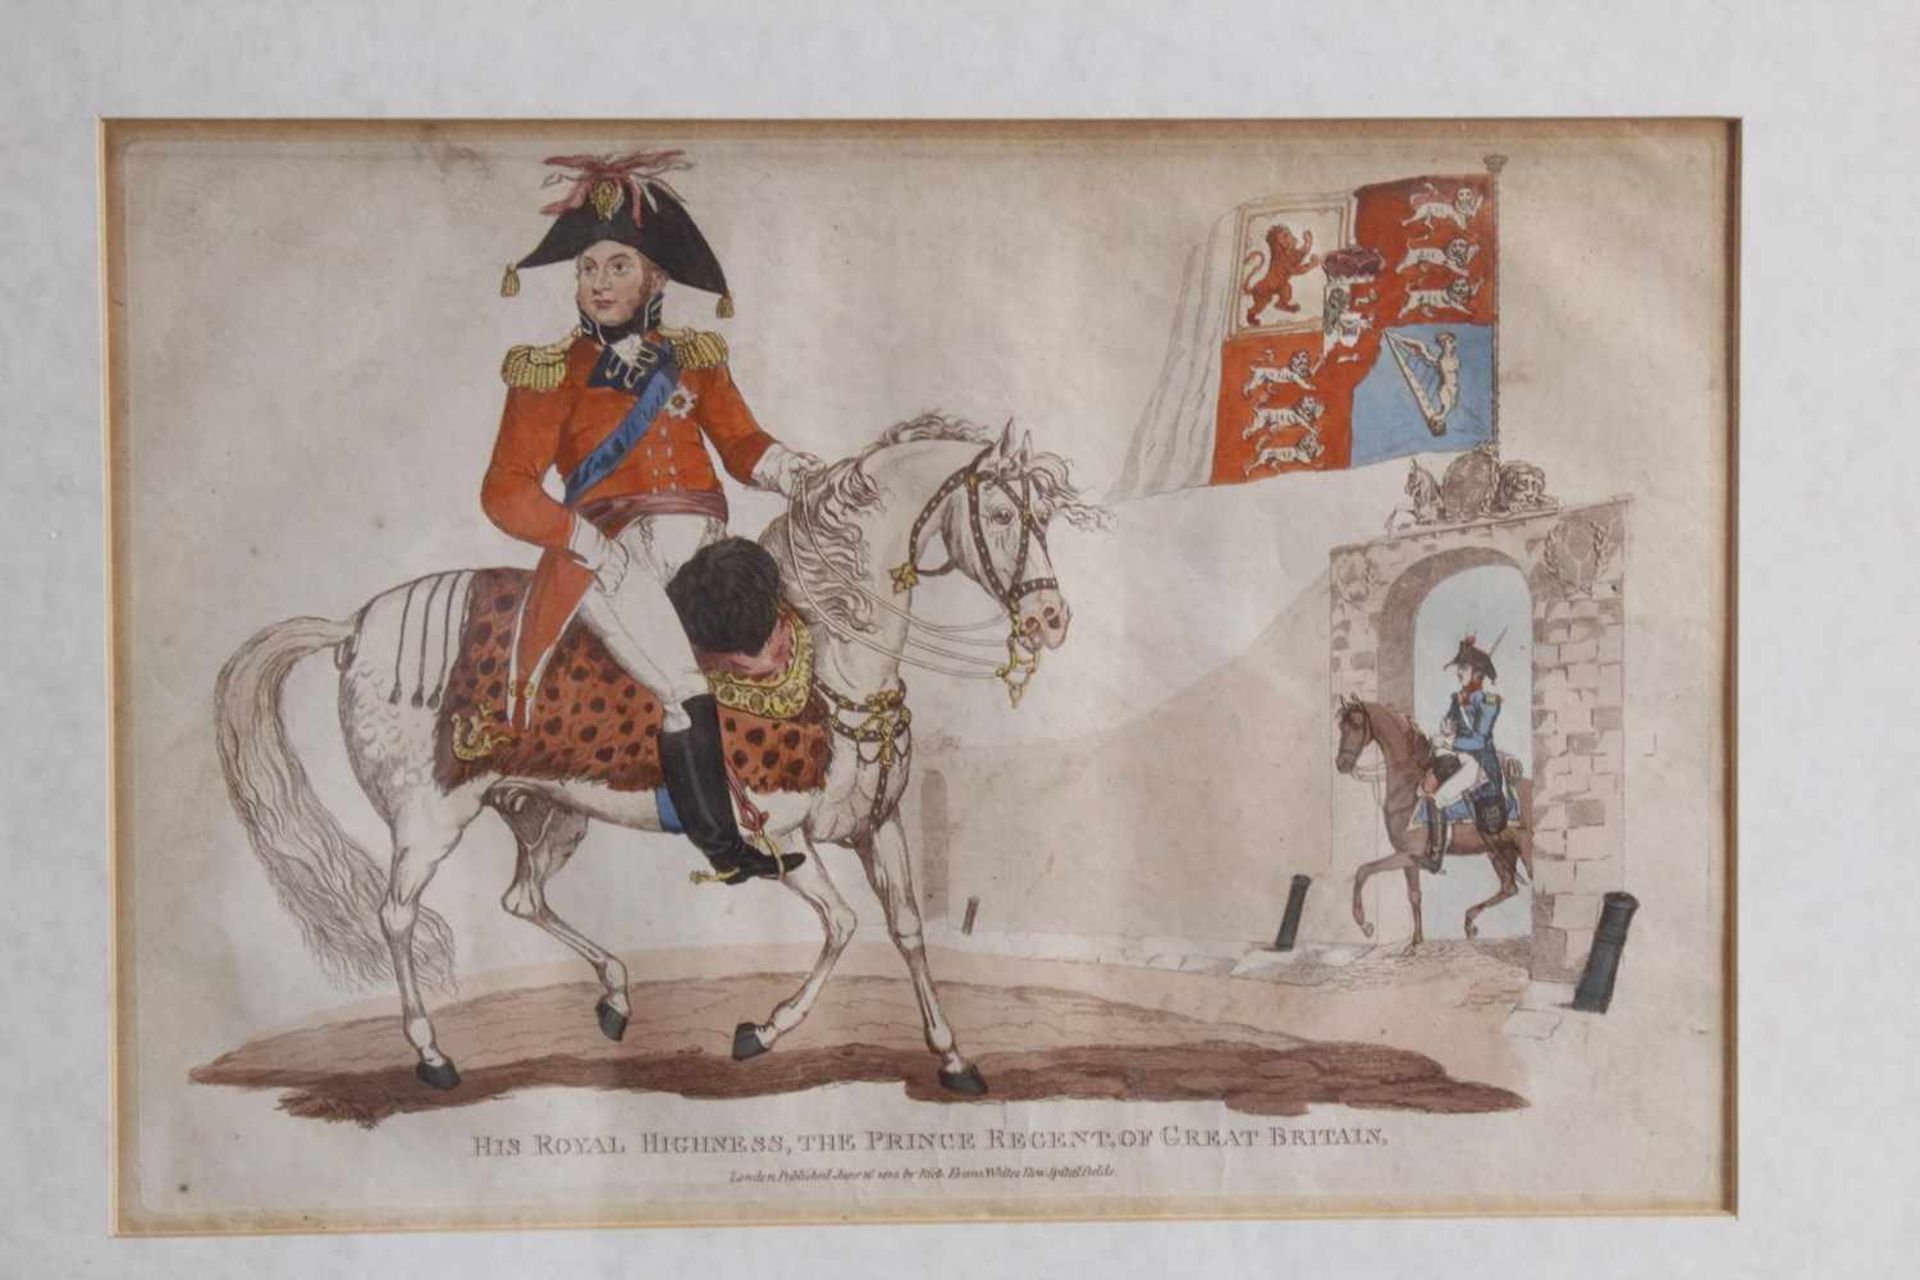 Kupferstich von 1815, Hus Royal Highness, The Prince Regent Of Great BritainVon Hand koloriert, - Bild 2 aus 2